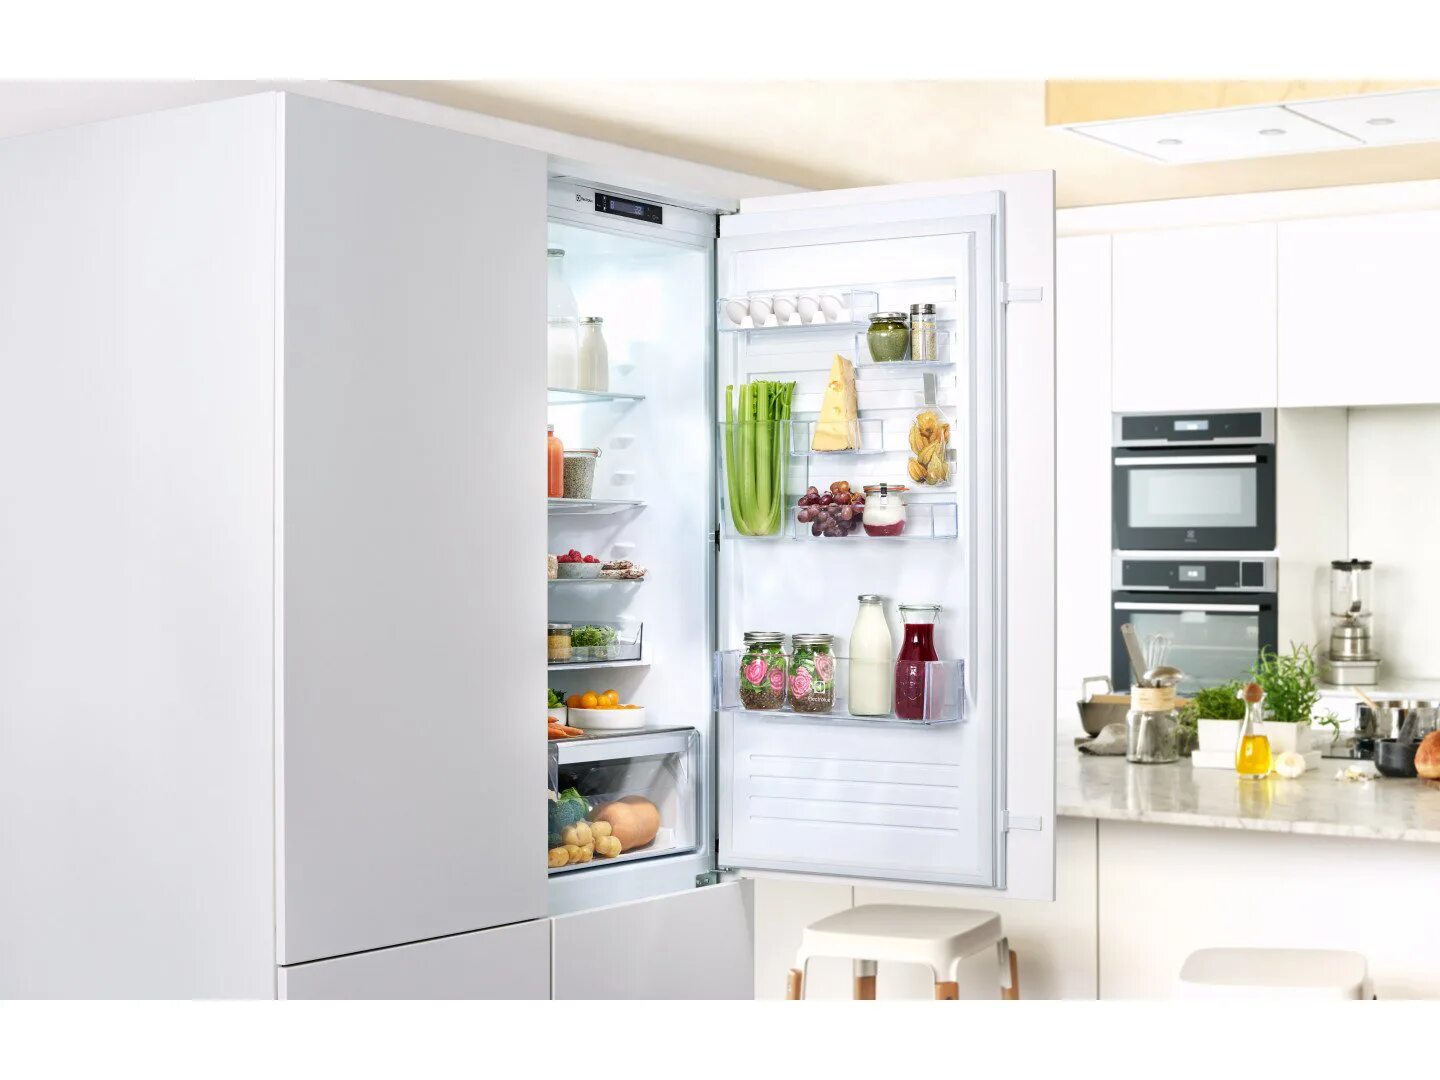 Встраиваемый холодильник Electrolux enn3074efw. Встроенный холодильник Электролюкс. Встраиваемый холодильник Электролюкс. Встраиваемый холодильник Electrolux enn. Топ встраиваемых холодильников